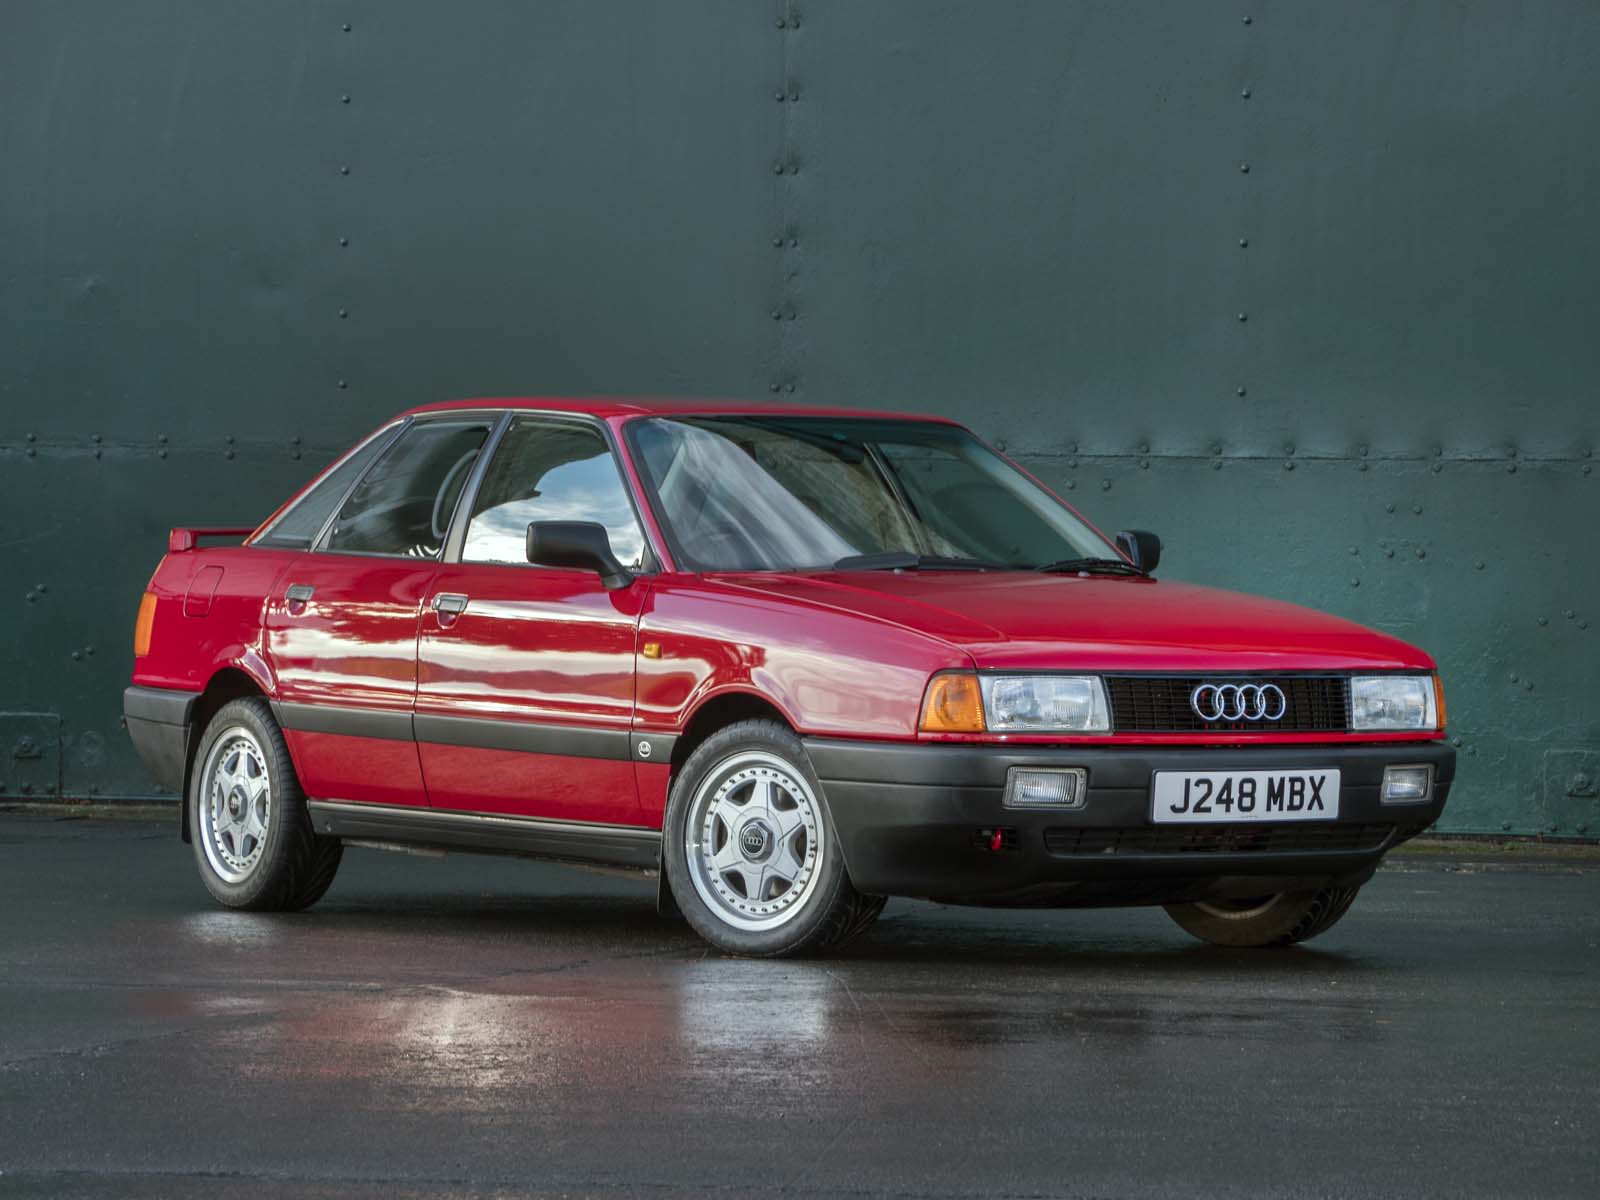 Audi 80 1991 - Jalopy 1986 B3 